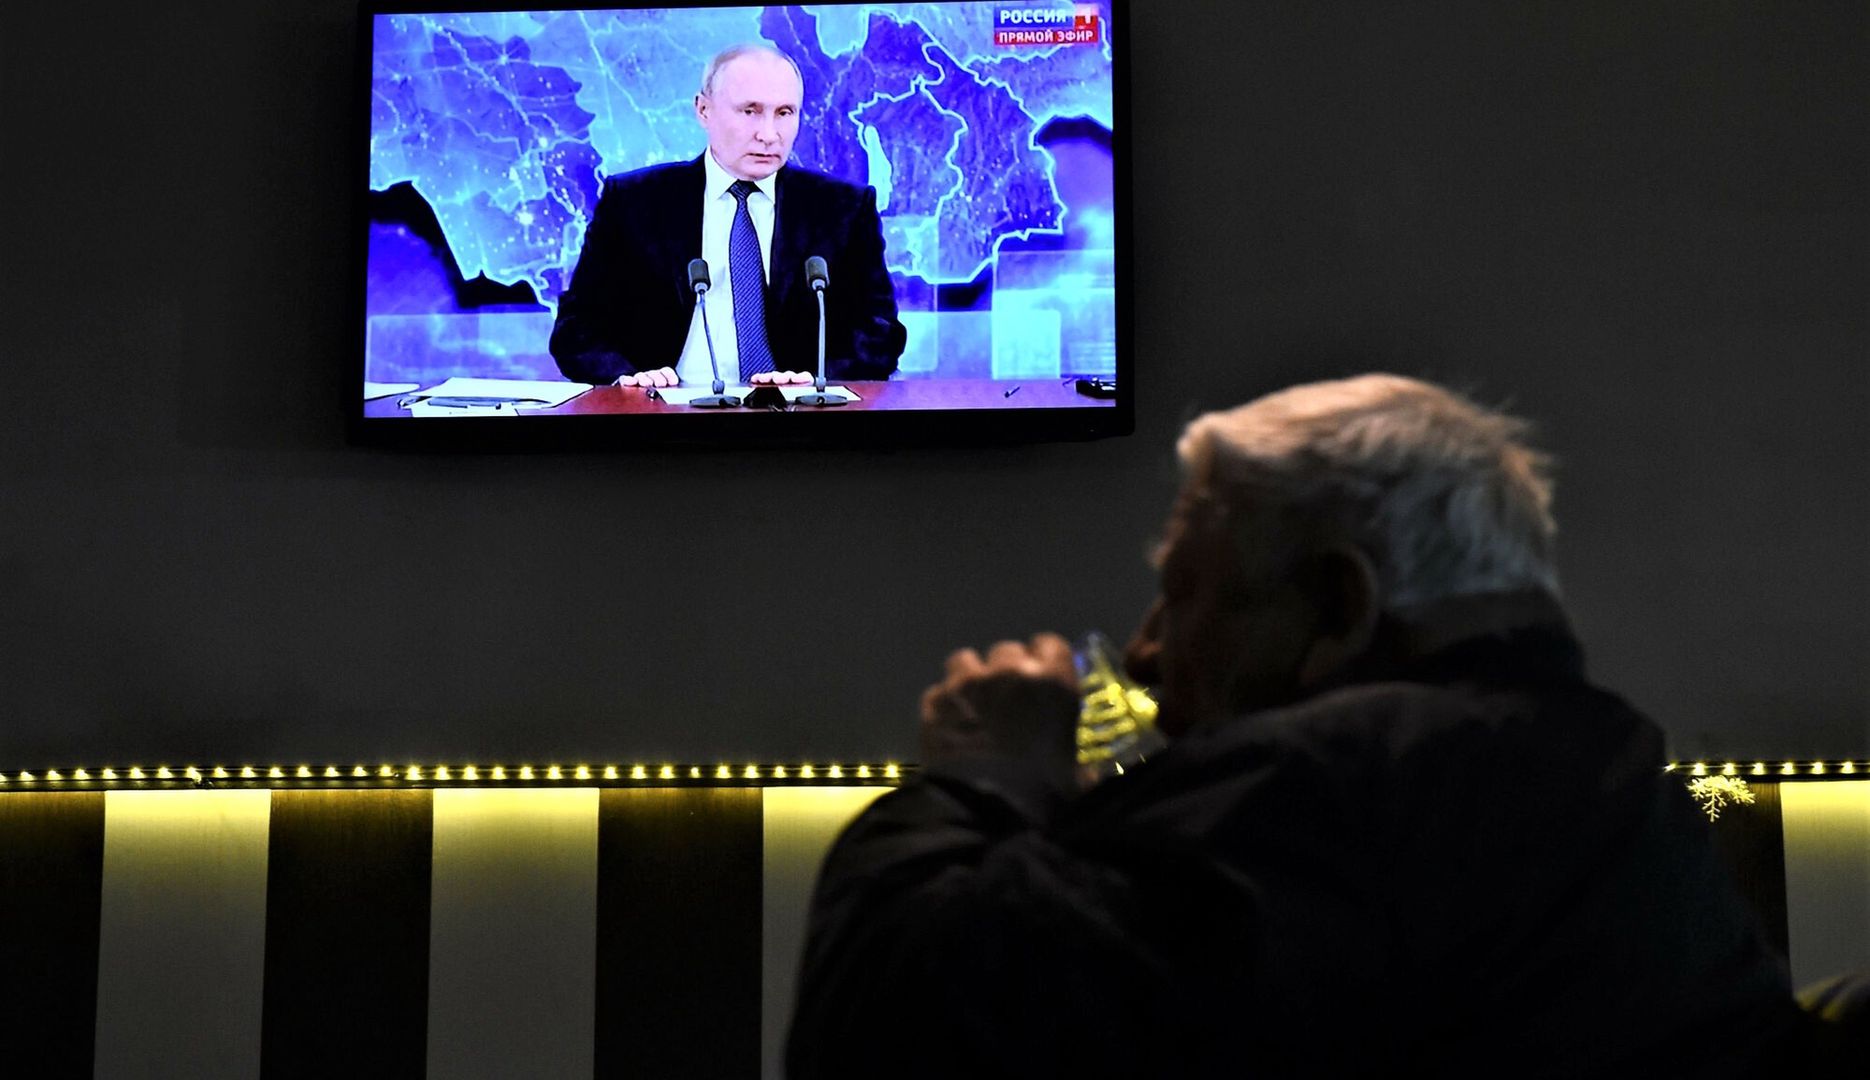 Mężczyźni piją wódkę w barze w Sankt Petersburgu. Na ekranie TV Władimir Putin podczas corocznej konferencji prasowej transmitowanej na propagandowym kanale Rossija 24